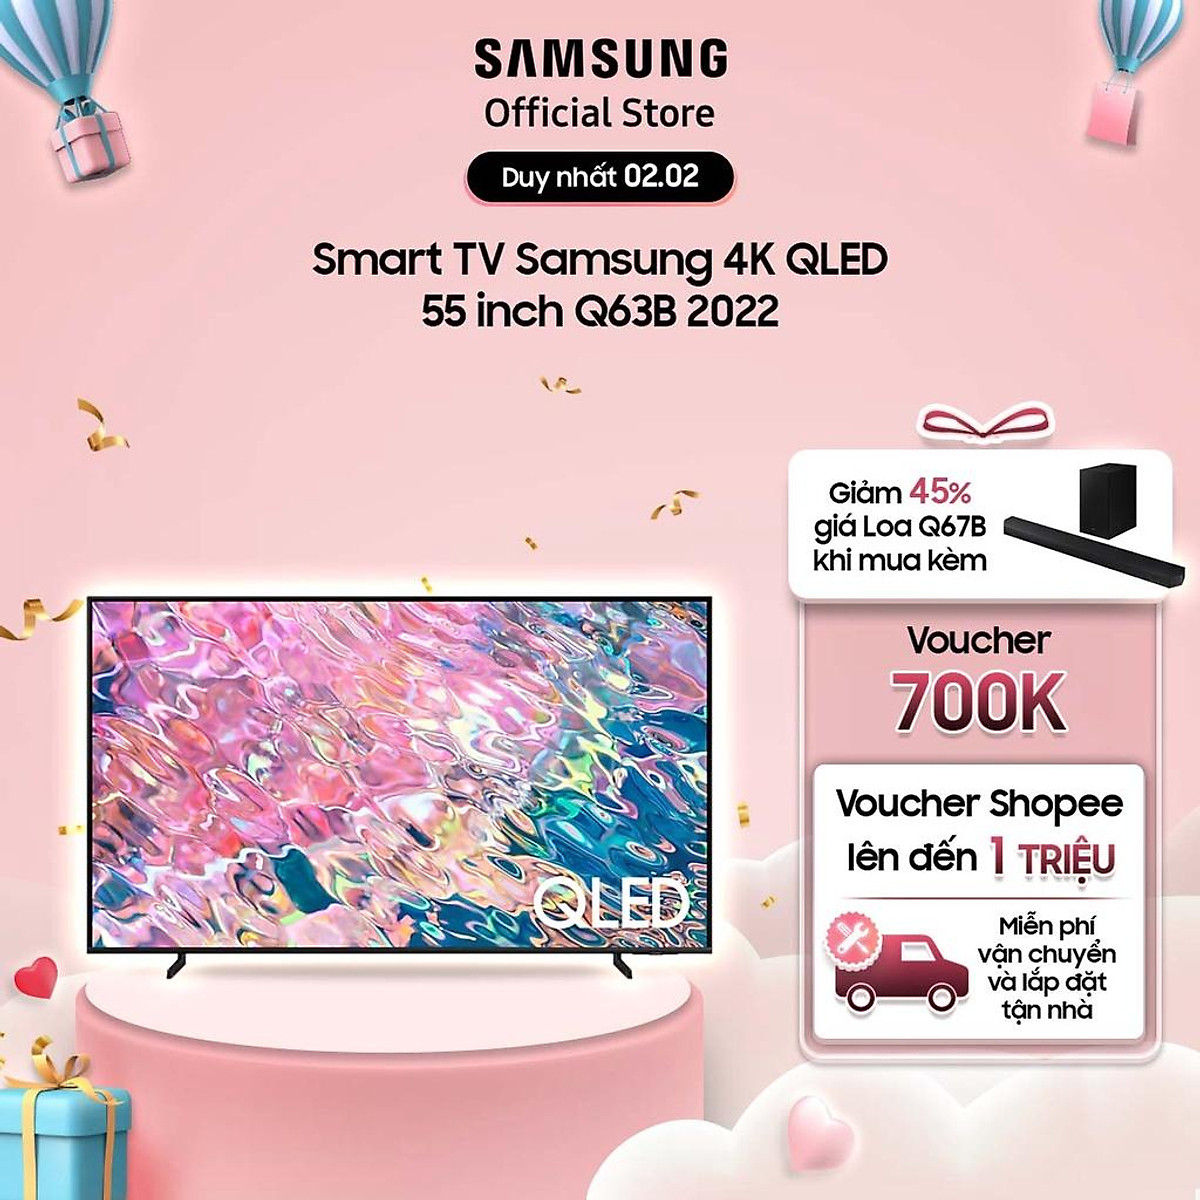 Mua Smart TV Samsung 4K QLED 55 inch Q63B 2022 - Hàng chính hãng | Tiki